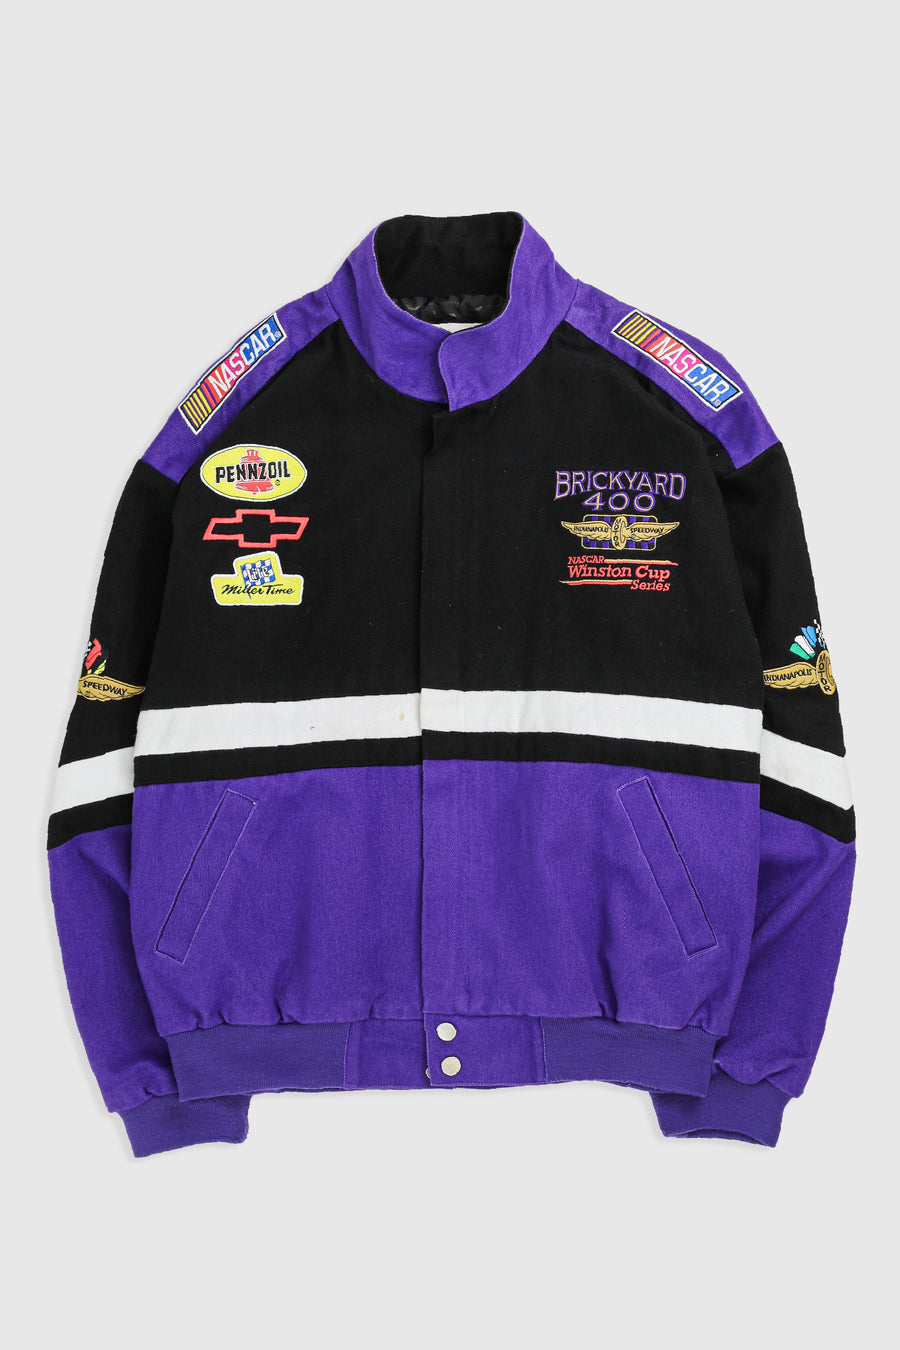 Vintage Racing Jacket - M